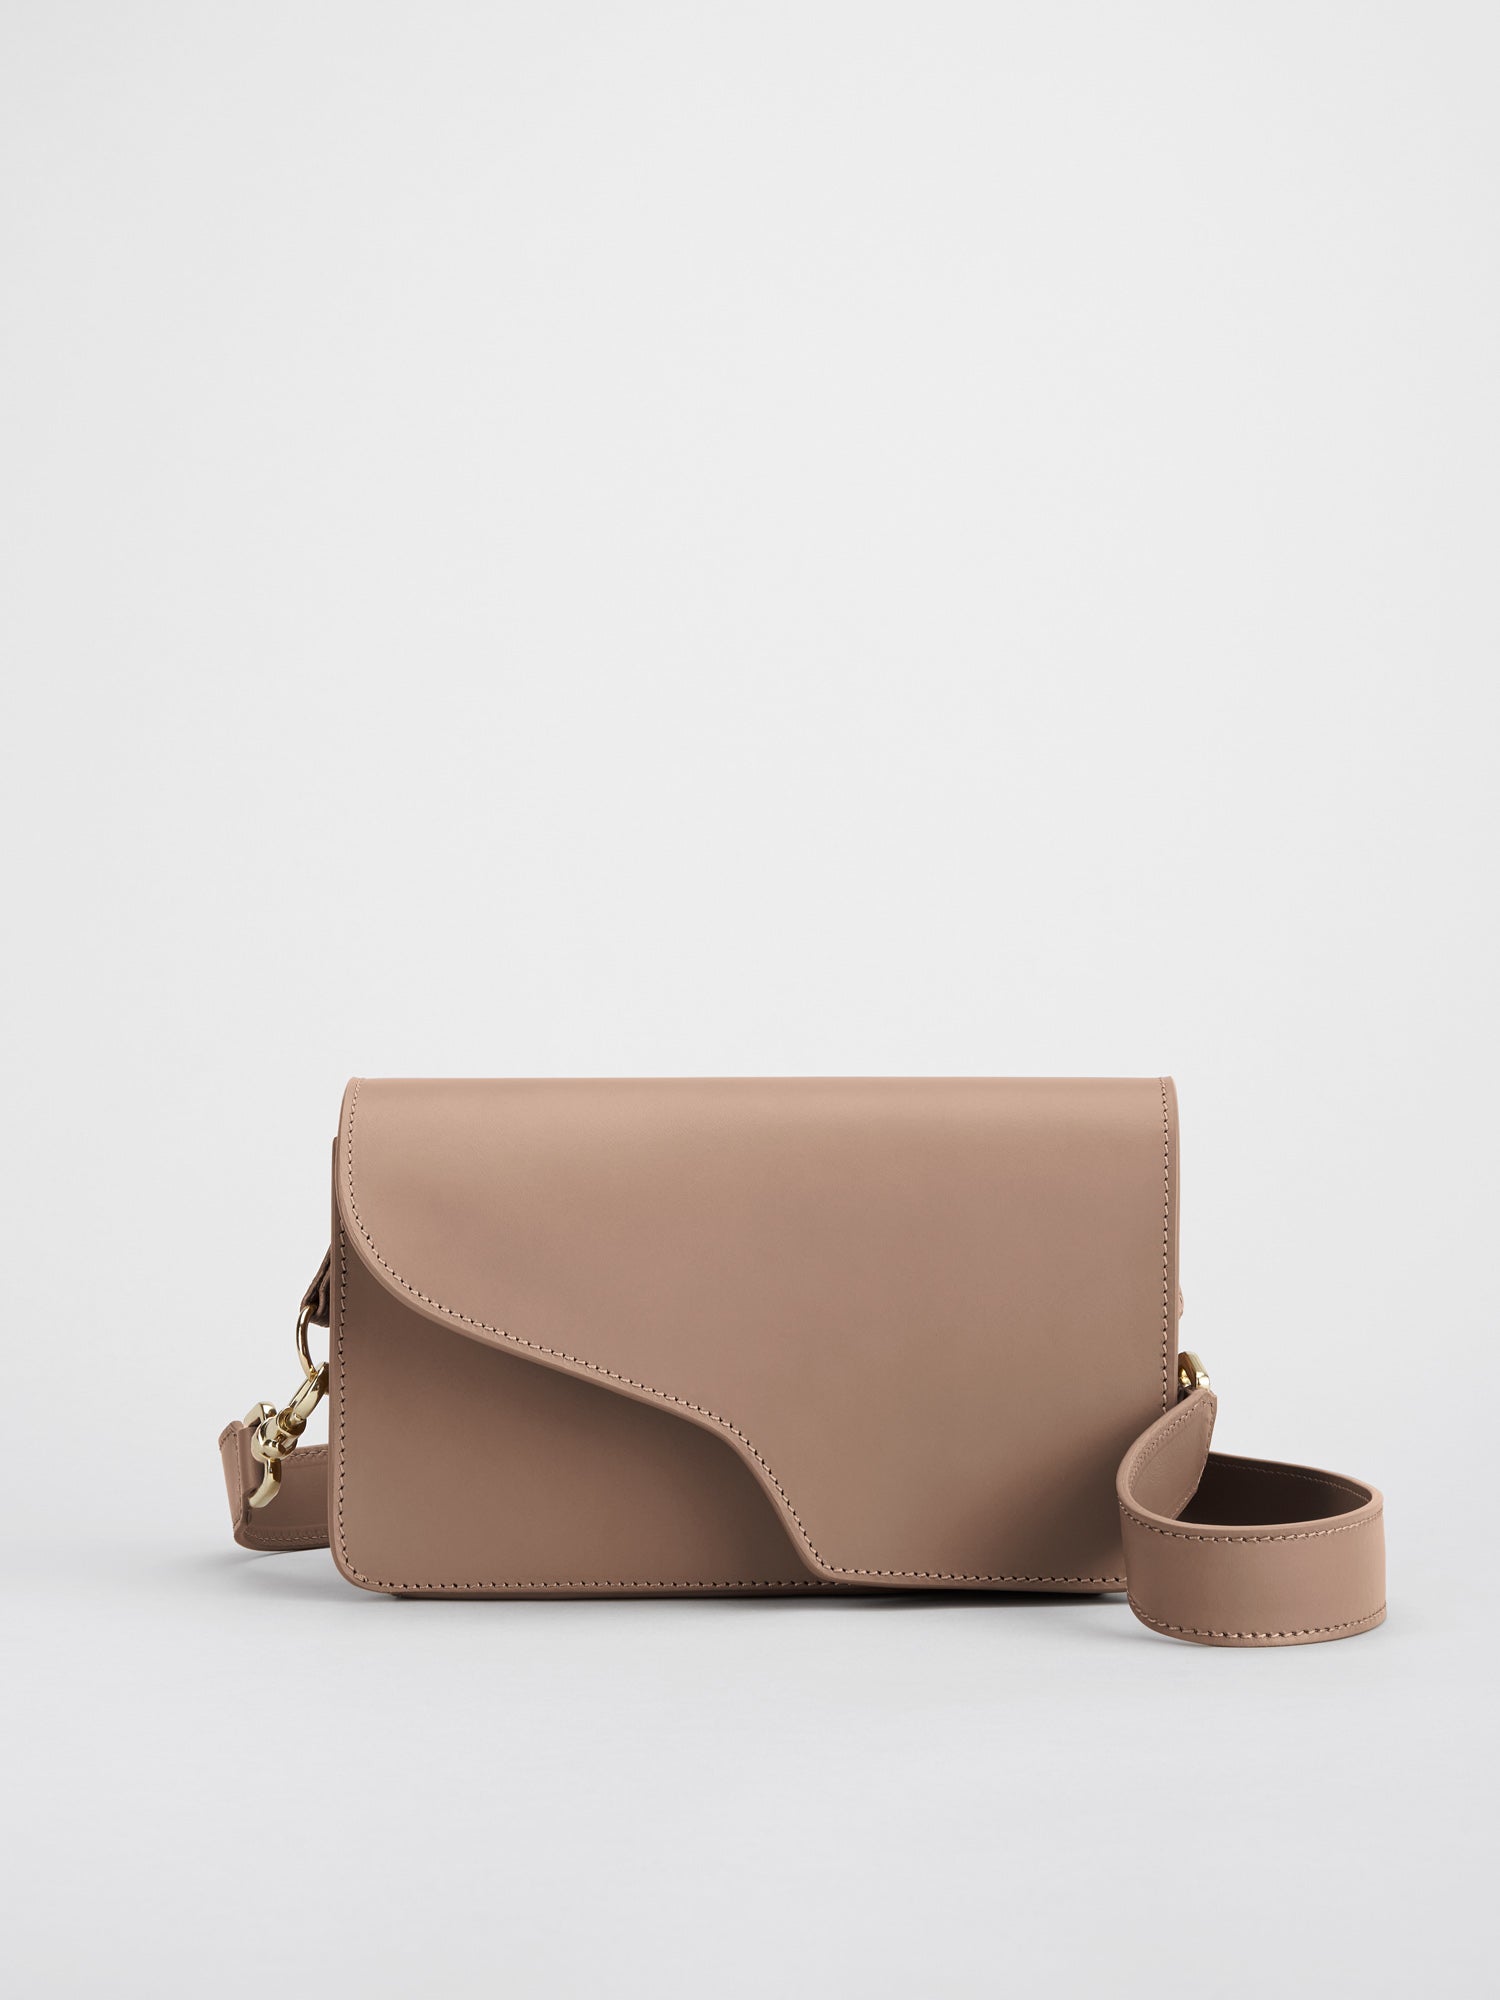 Assisi Hazelnut Leather Shoulder Bag